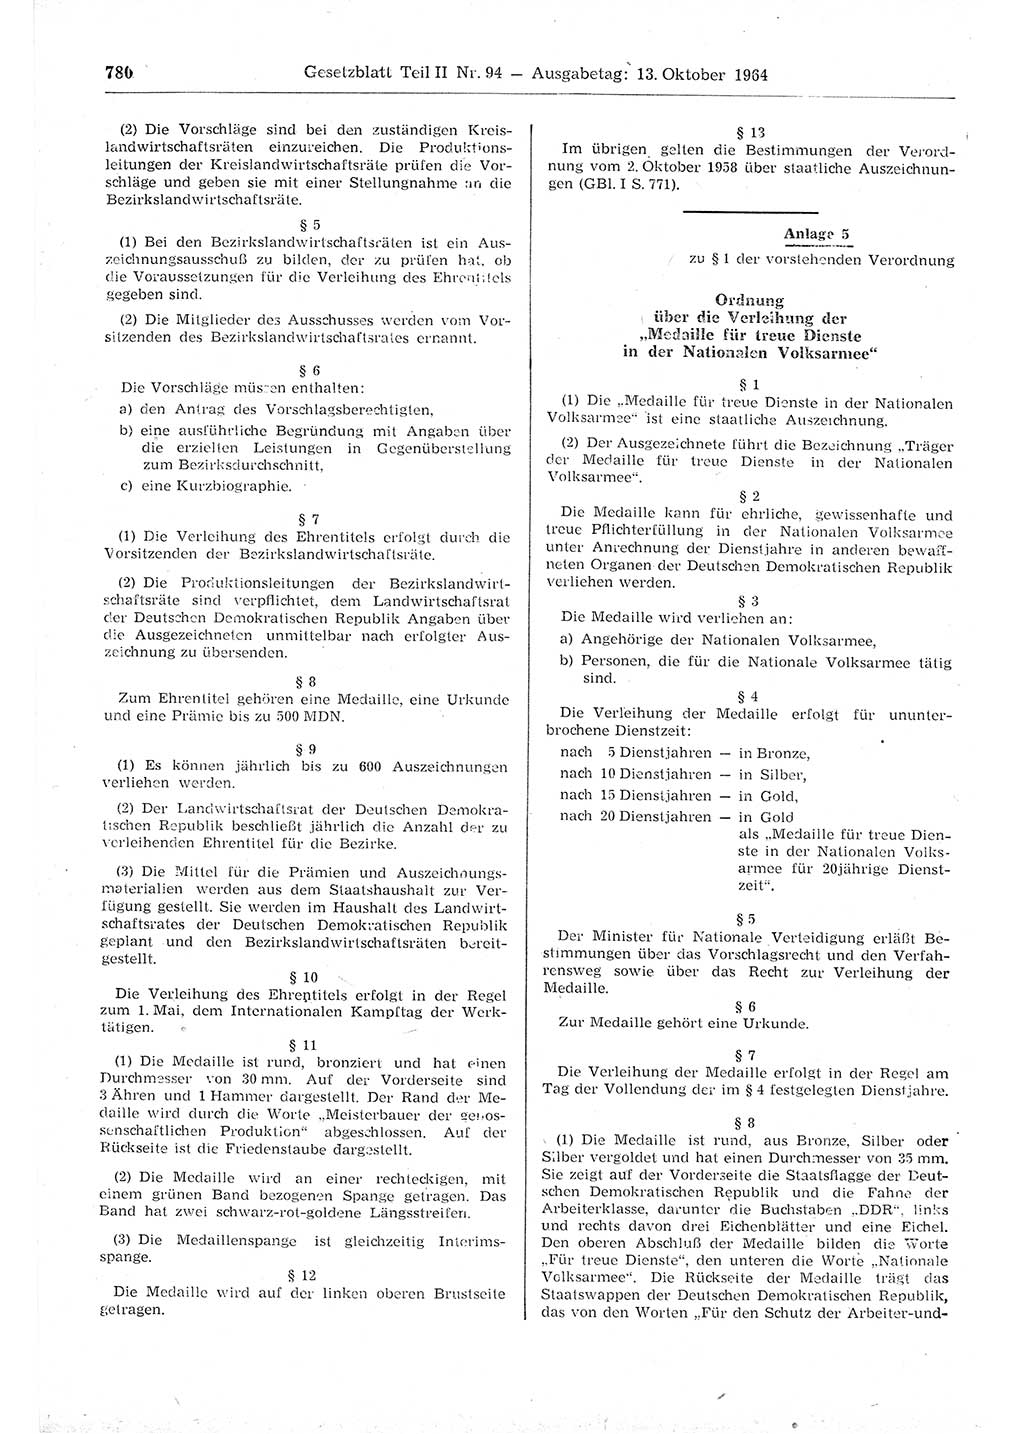 Gesetzblatt (GBl.) der Deutschen Demokratischen Republik (DDR) Teil ⅠⅠ 1964, Seite 780 (GBl. DDR ⅠⅠ 1964, S. 780)